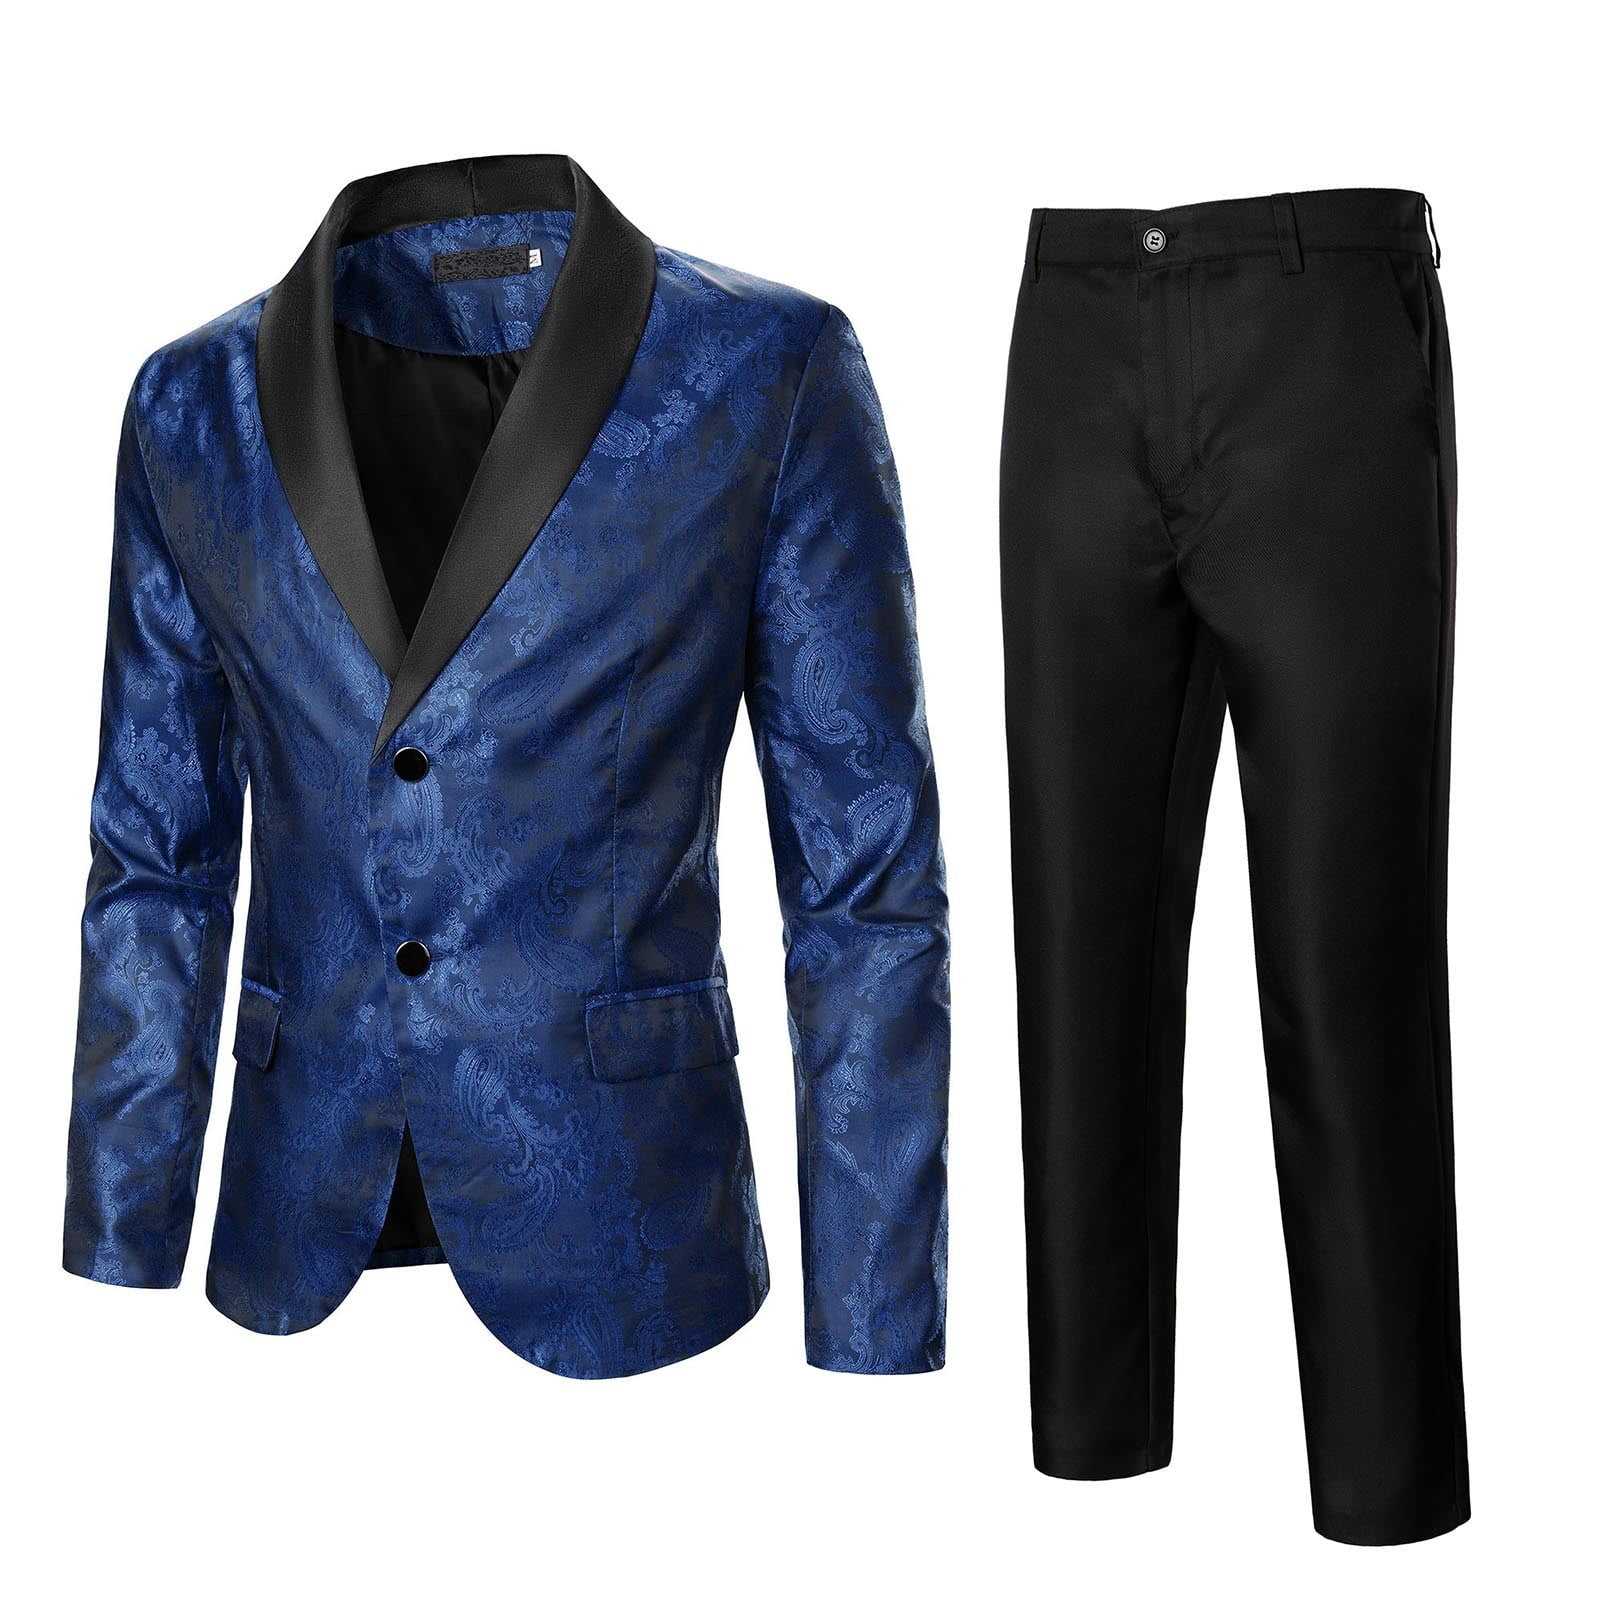 Mens Blue Suit | Royal Blue Suit | 3PC Blue Suit Luxury Men's Suit 786